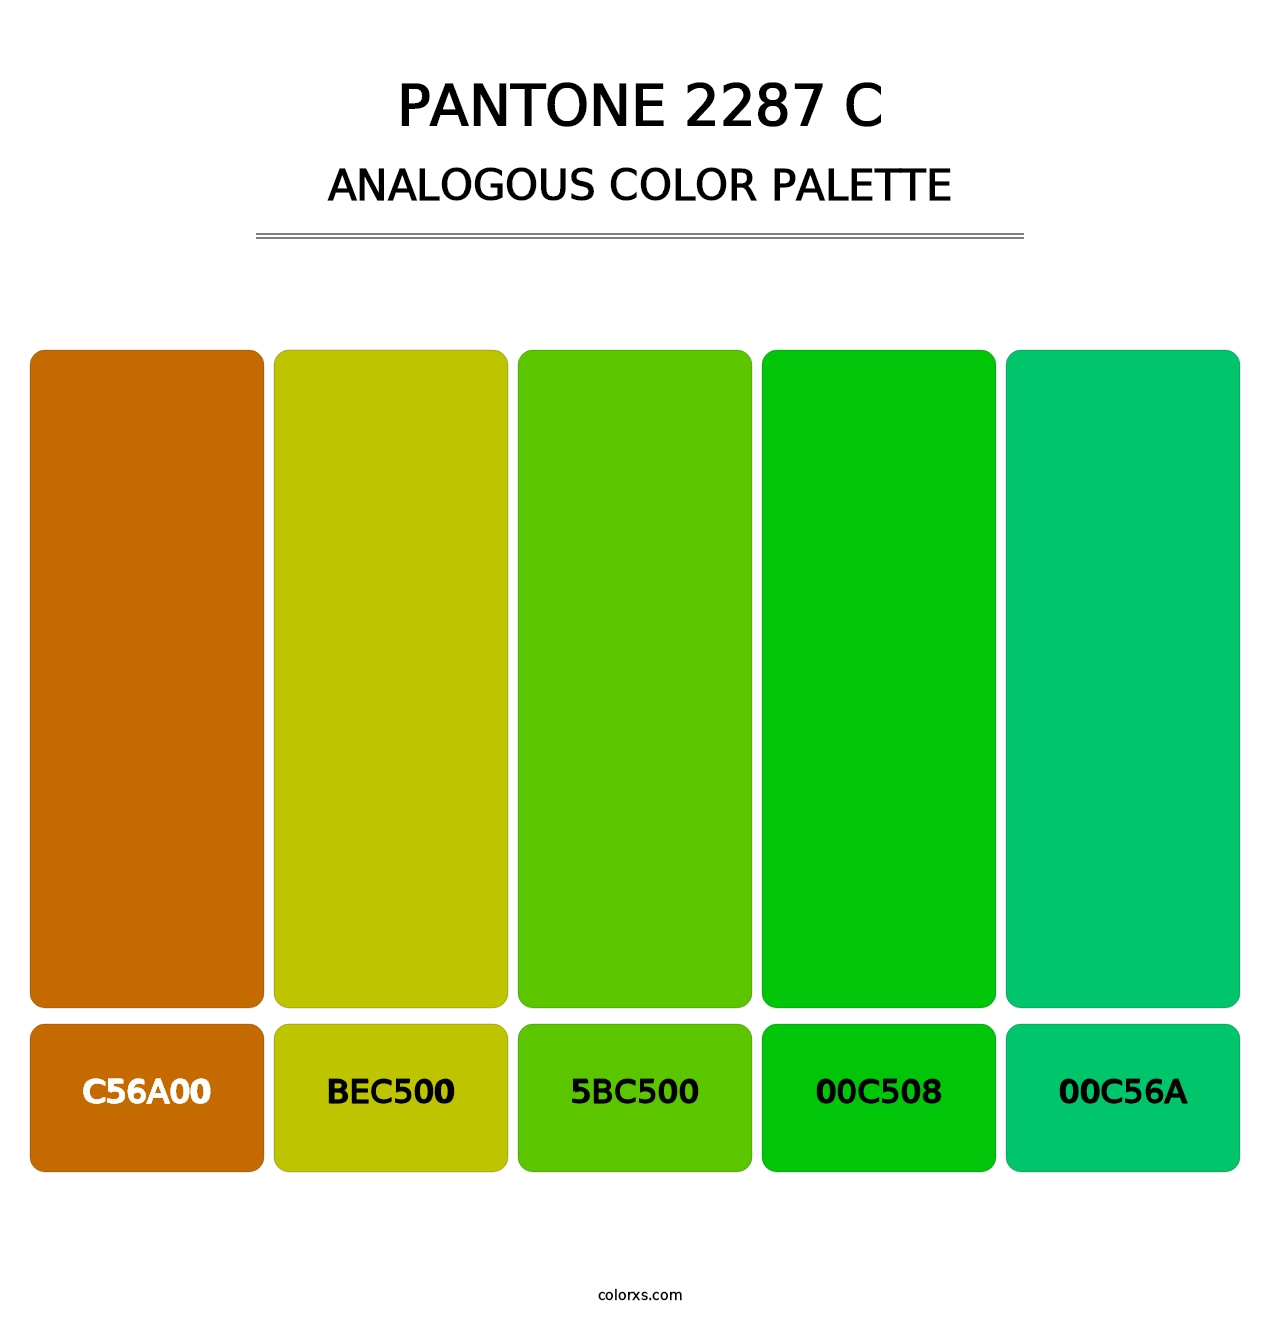 PANTONE 2287 C - Analogous Color Palette